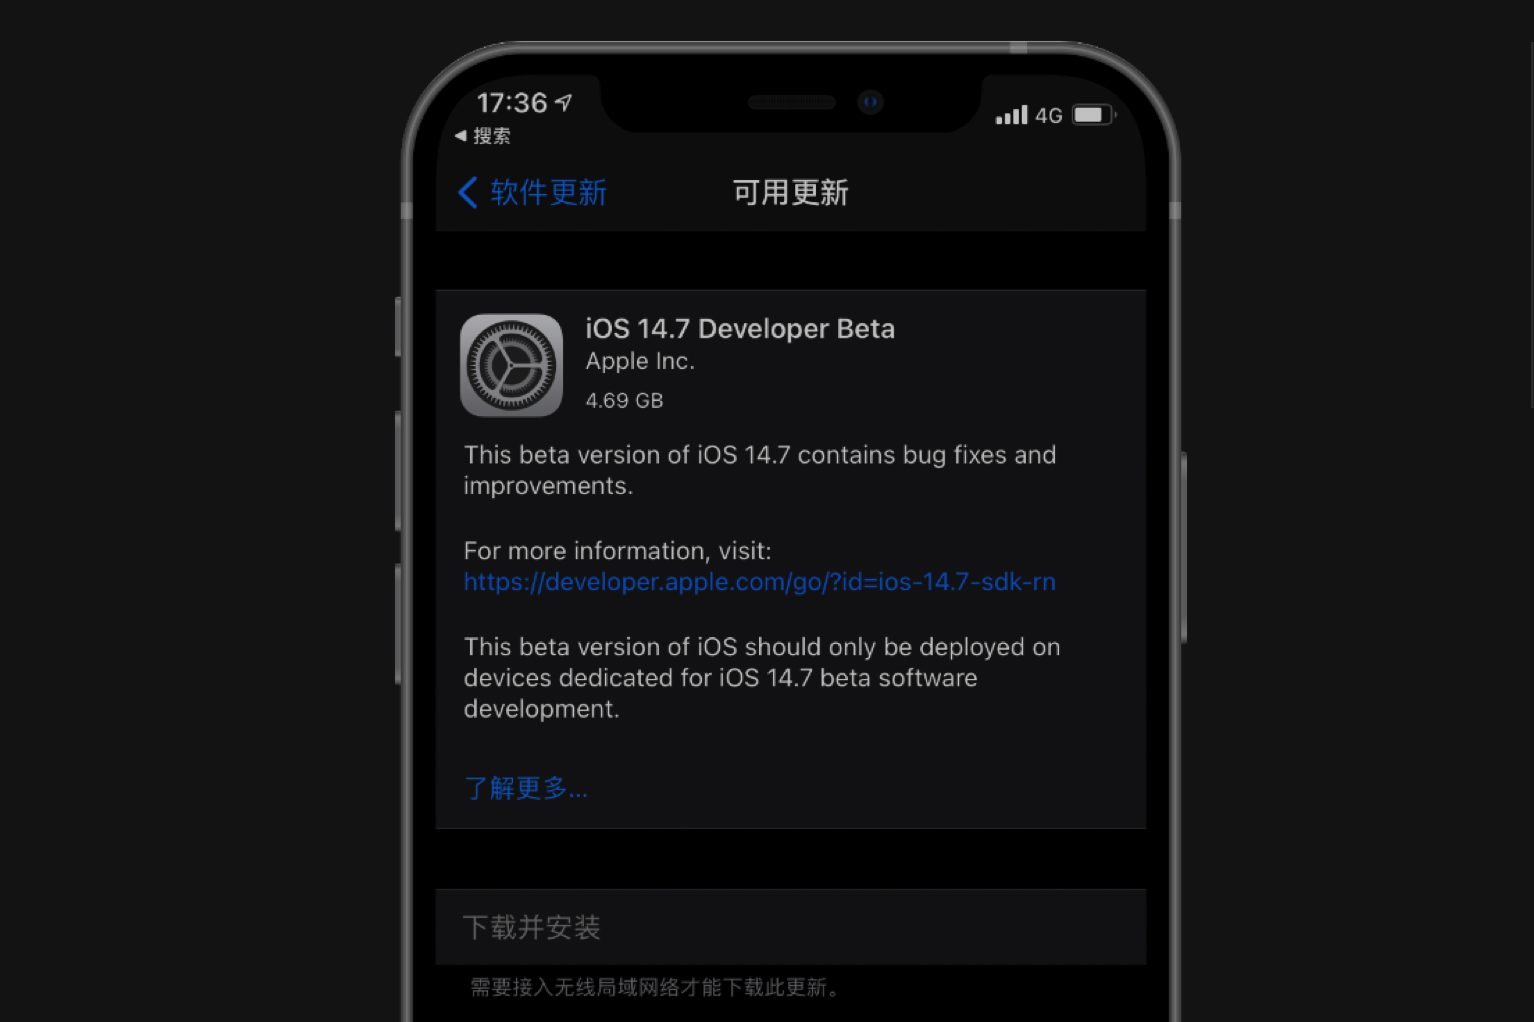 iShot2021 05 23 17.03.06 - iOS 14.5.1 appare “riduzione della frequenza casuale”, l’aggiornamento del firmware potrebbe essere una “spada a doppio taglio”